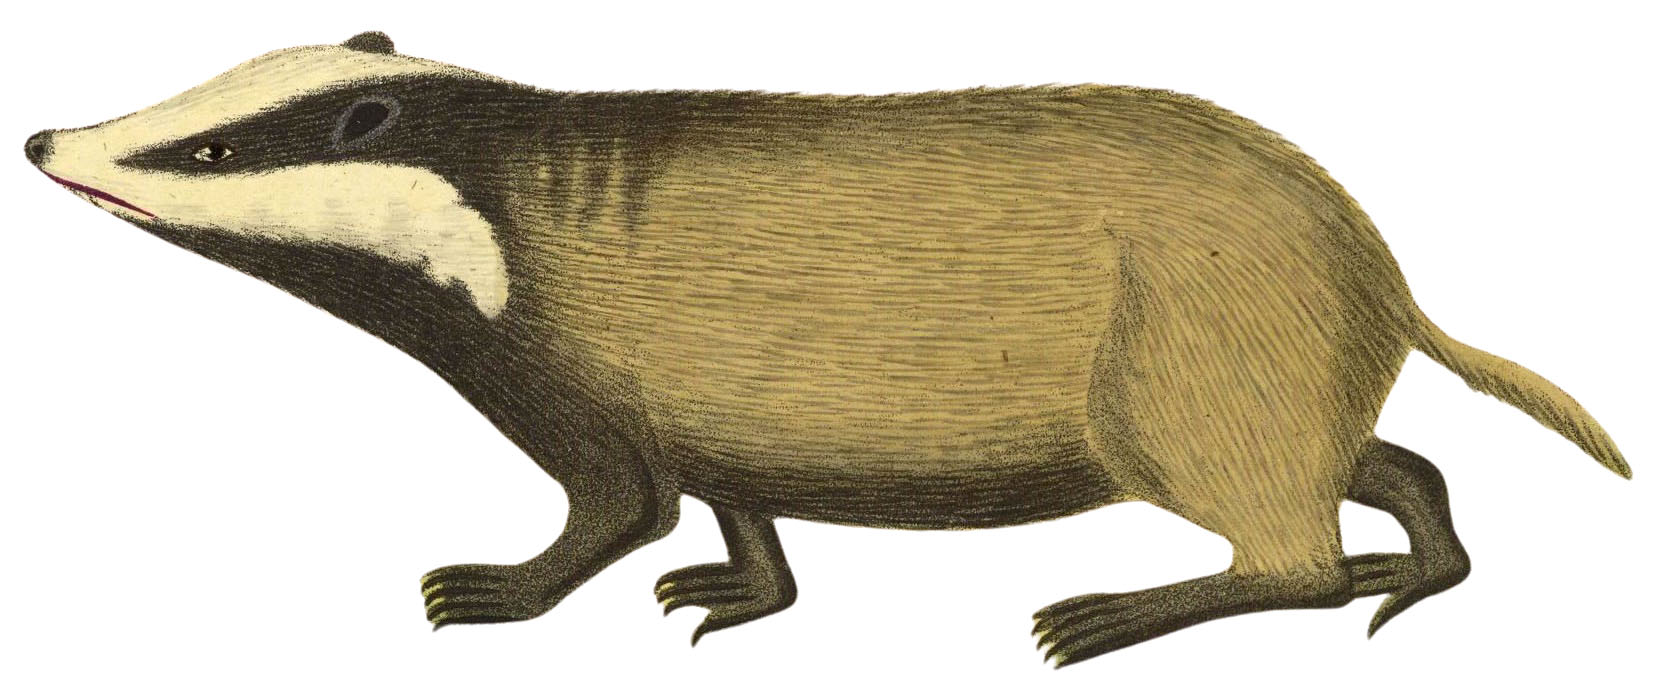 Natural History Badger Image